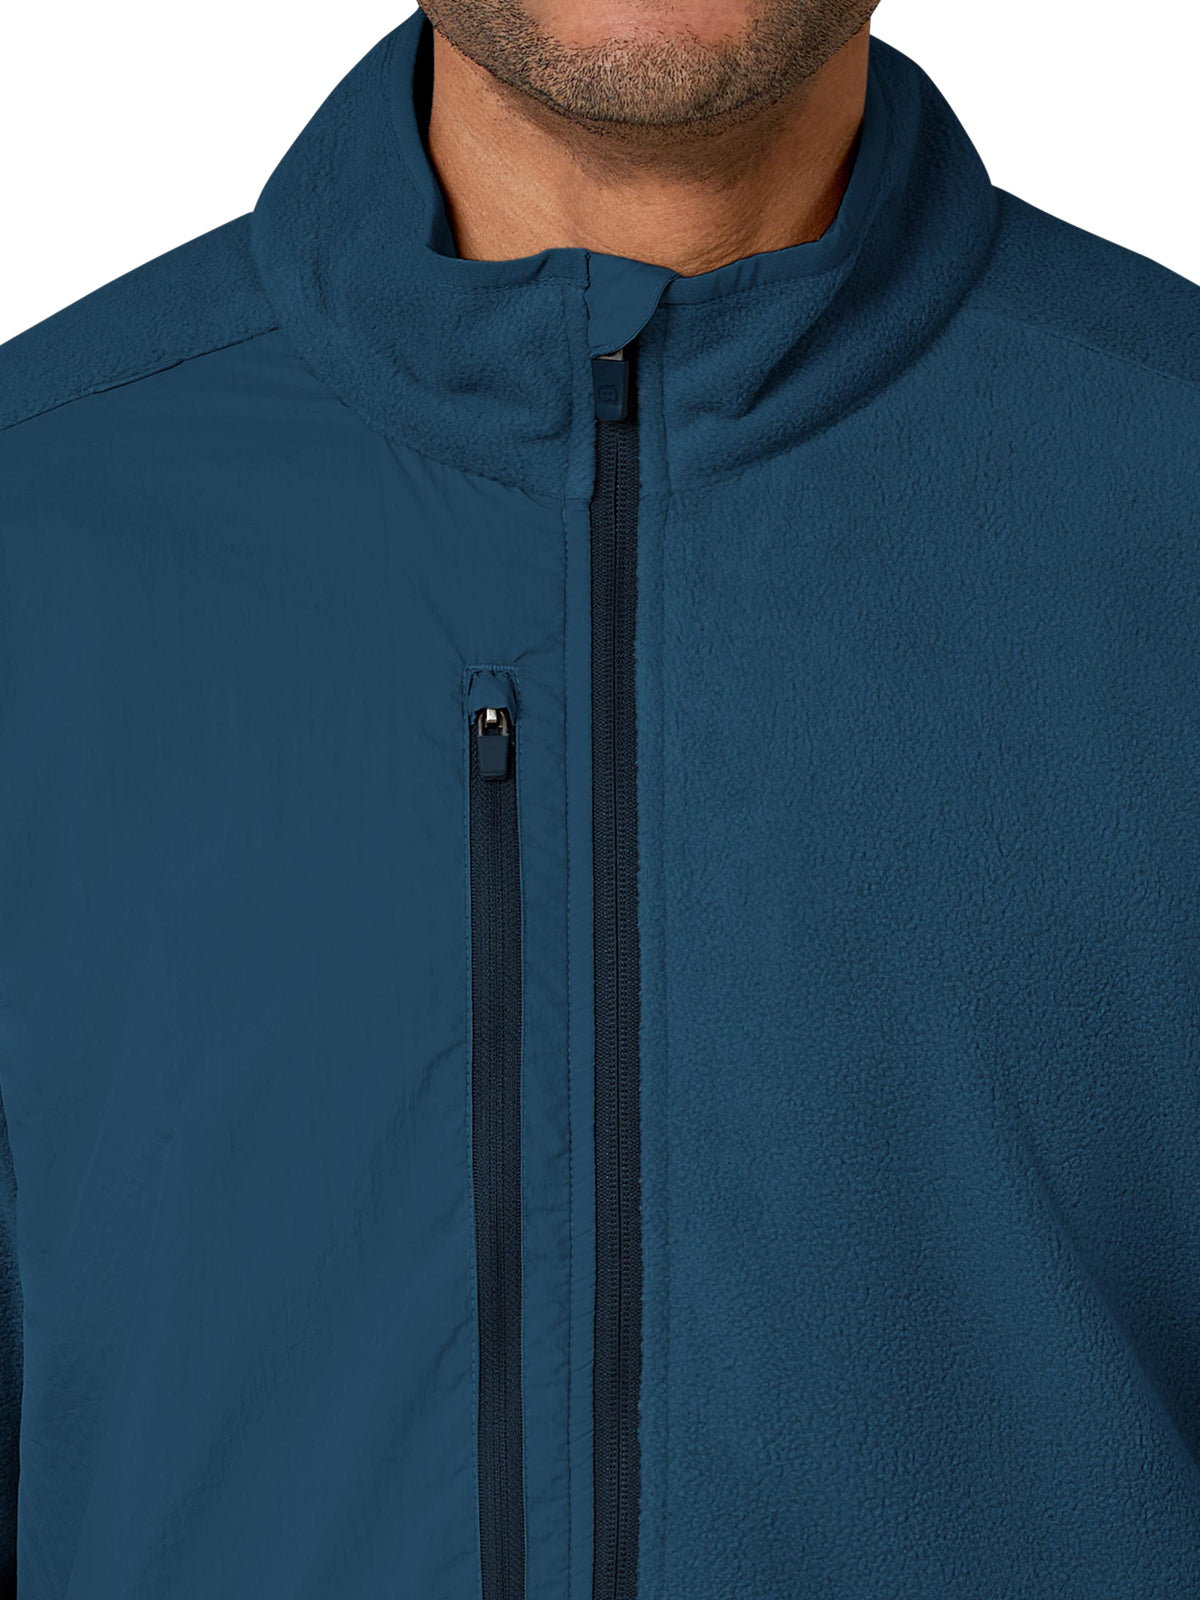 Men's Micro Fleece Zip Jacket - 8009 - Caribbean